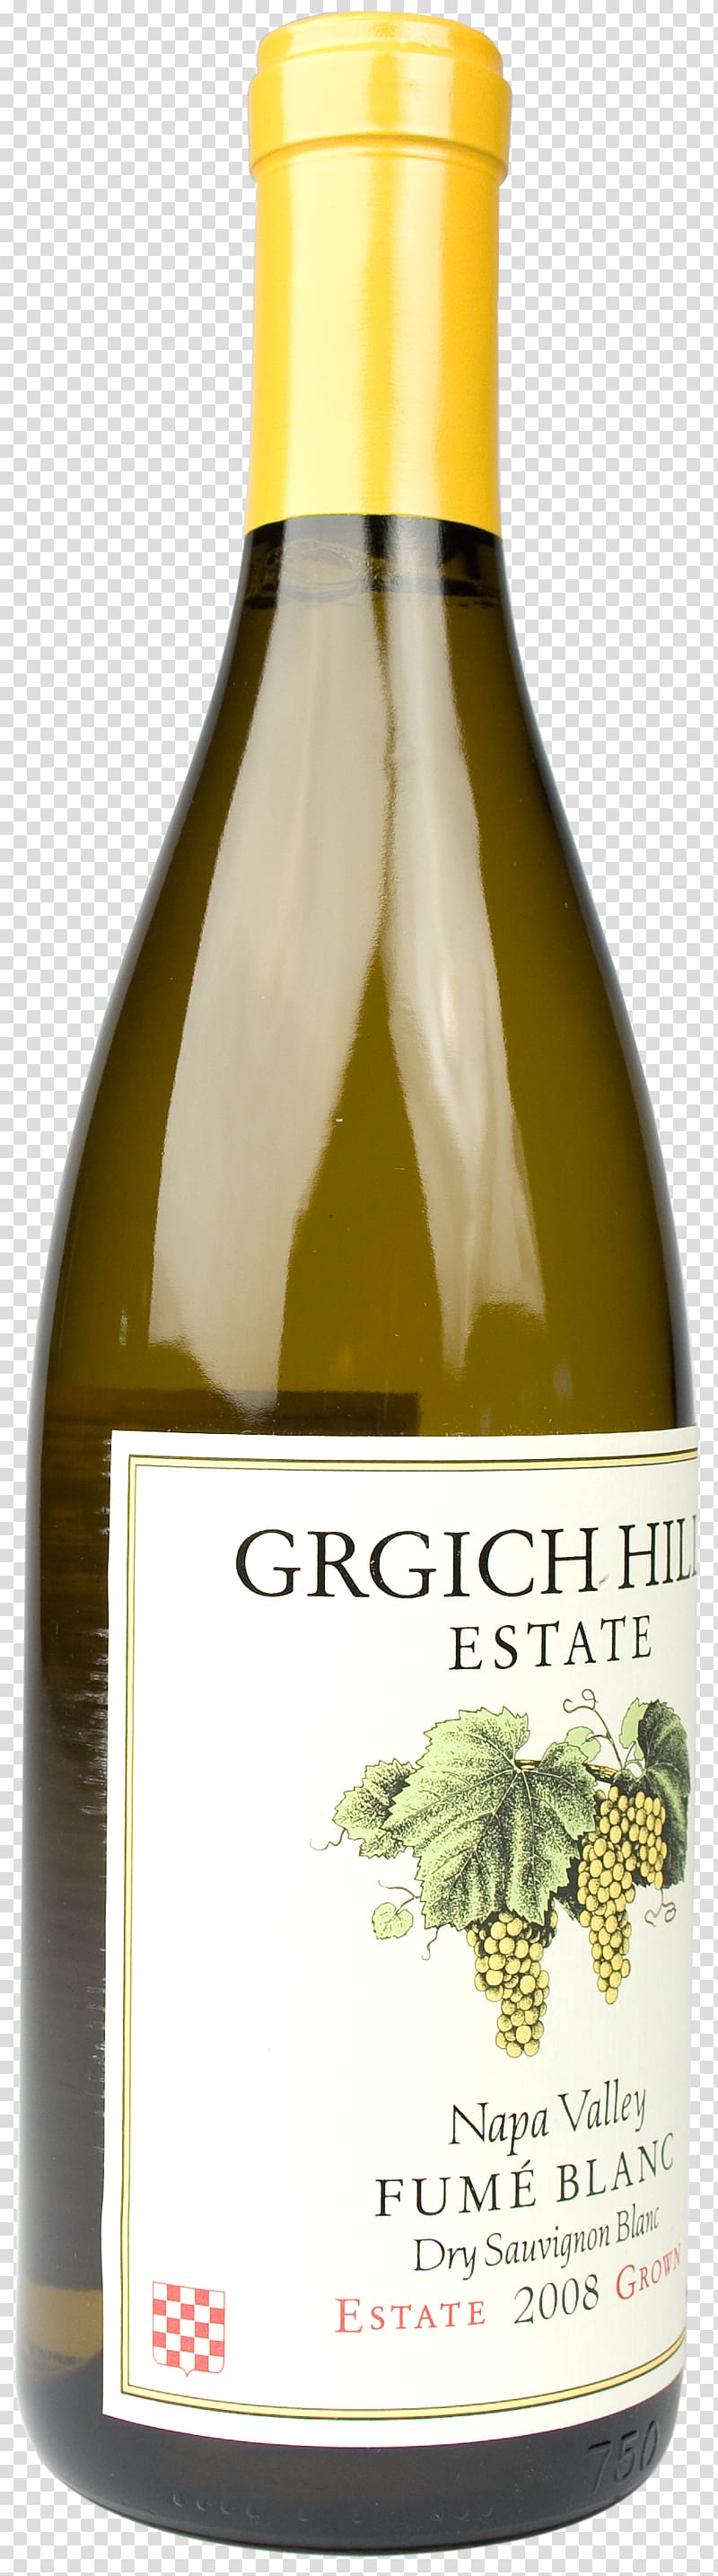 Grgich Hills Estate Liqueur White wine Chardonnay, flint hills stone transparent background PNG clipart